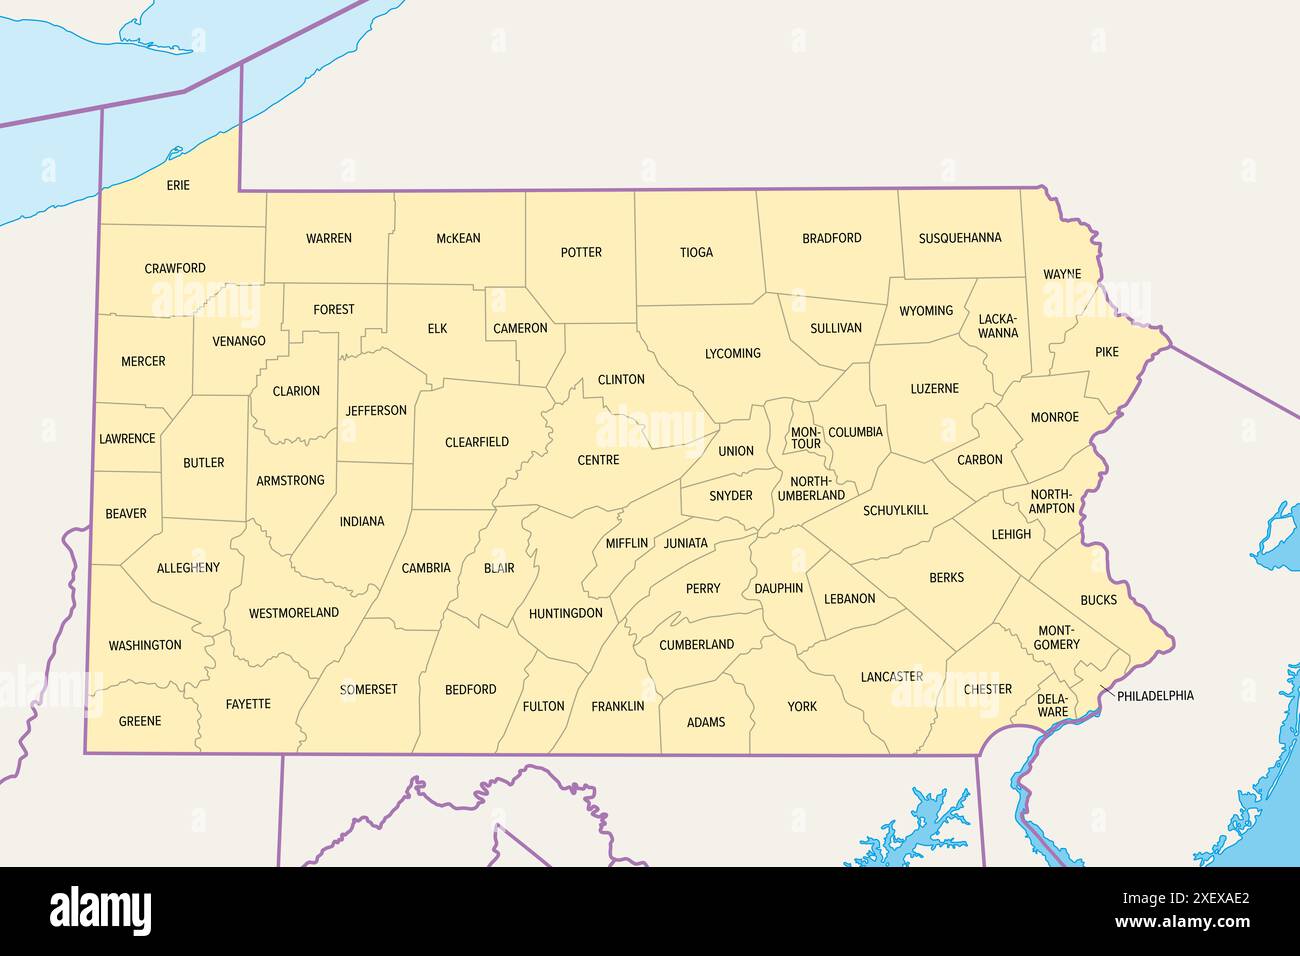 Pennsylvania Counties, politische Karte. Commonwealth of Pennsylvania, Bundesstaat Mittelatlantik und Nordosten der Vereinigten Staaten, unterteilt in 67 Countys. Stockfoto